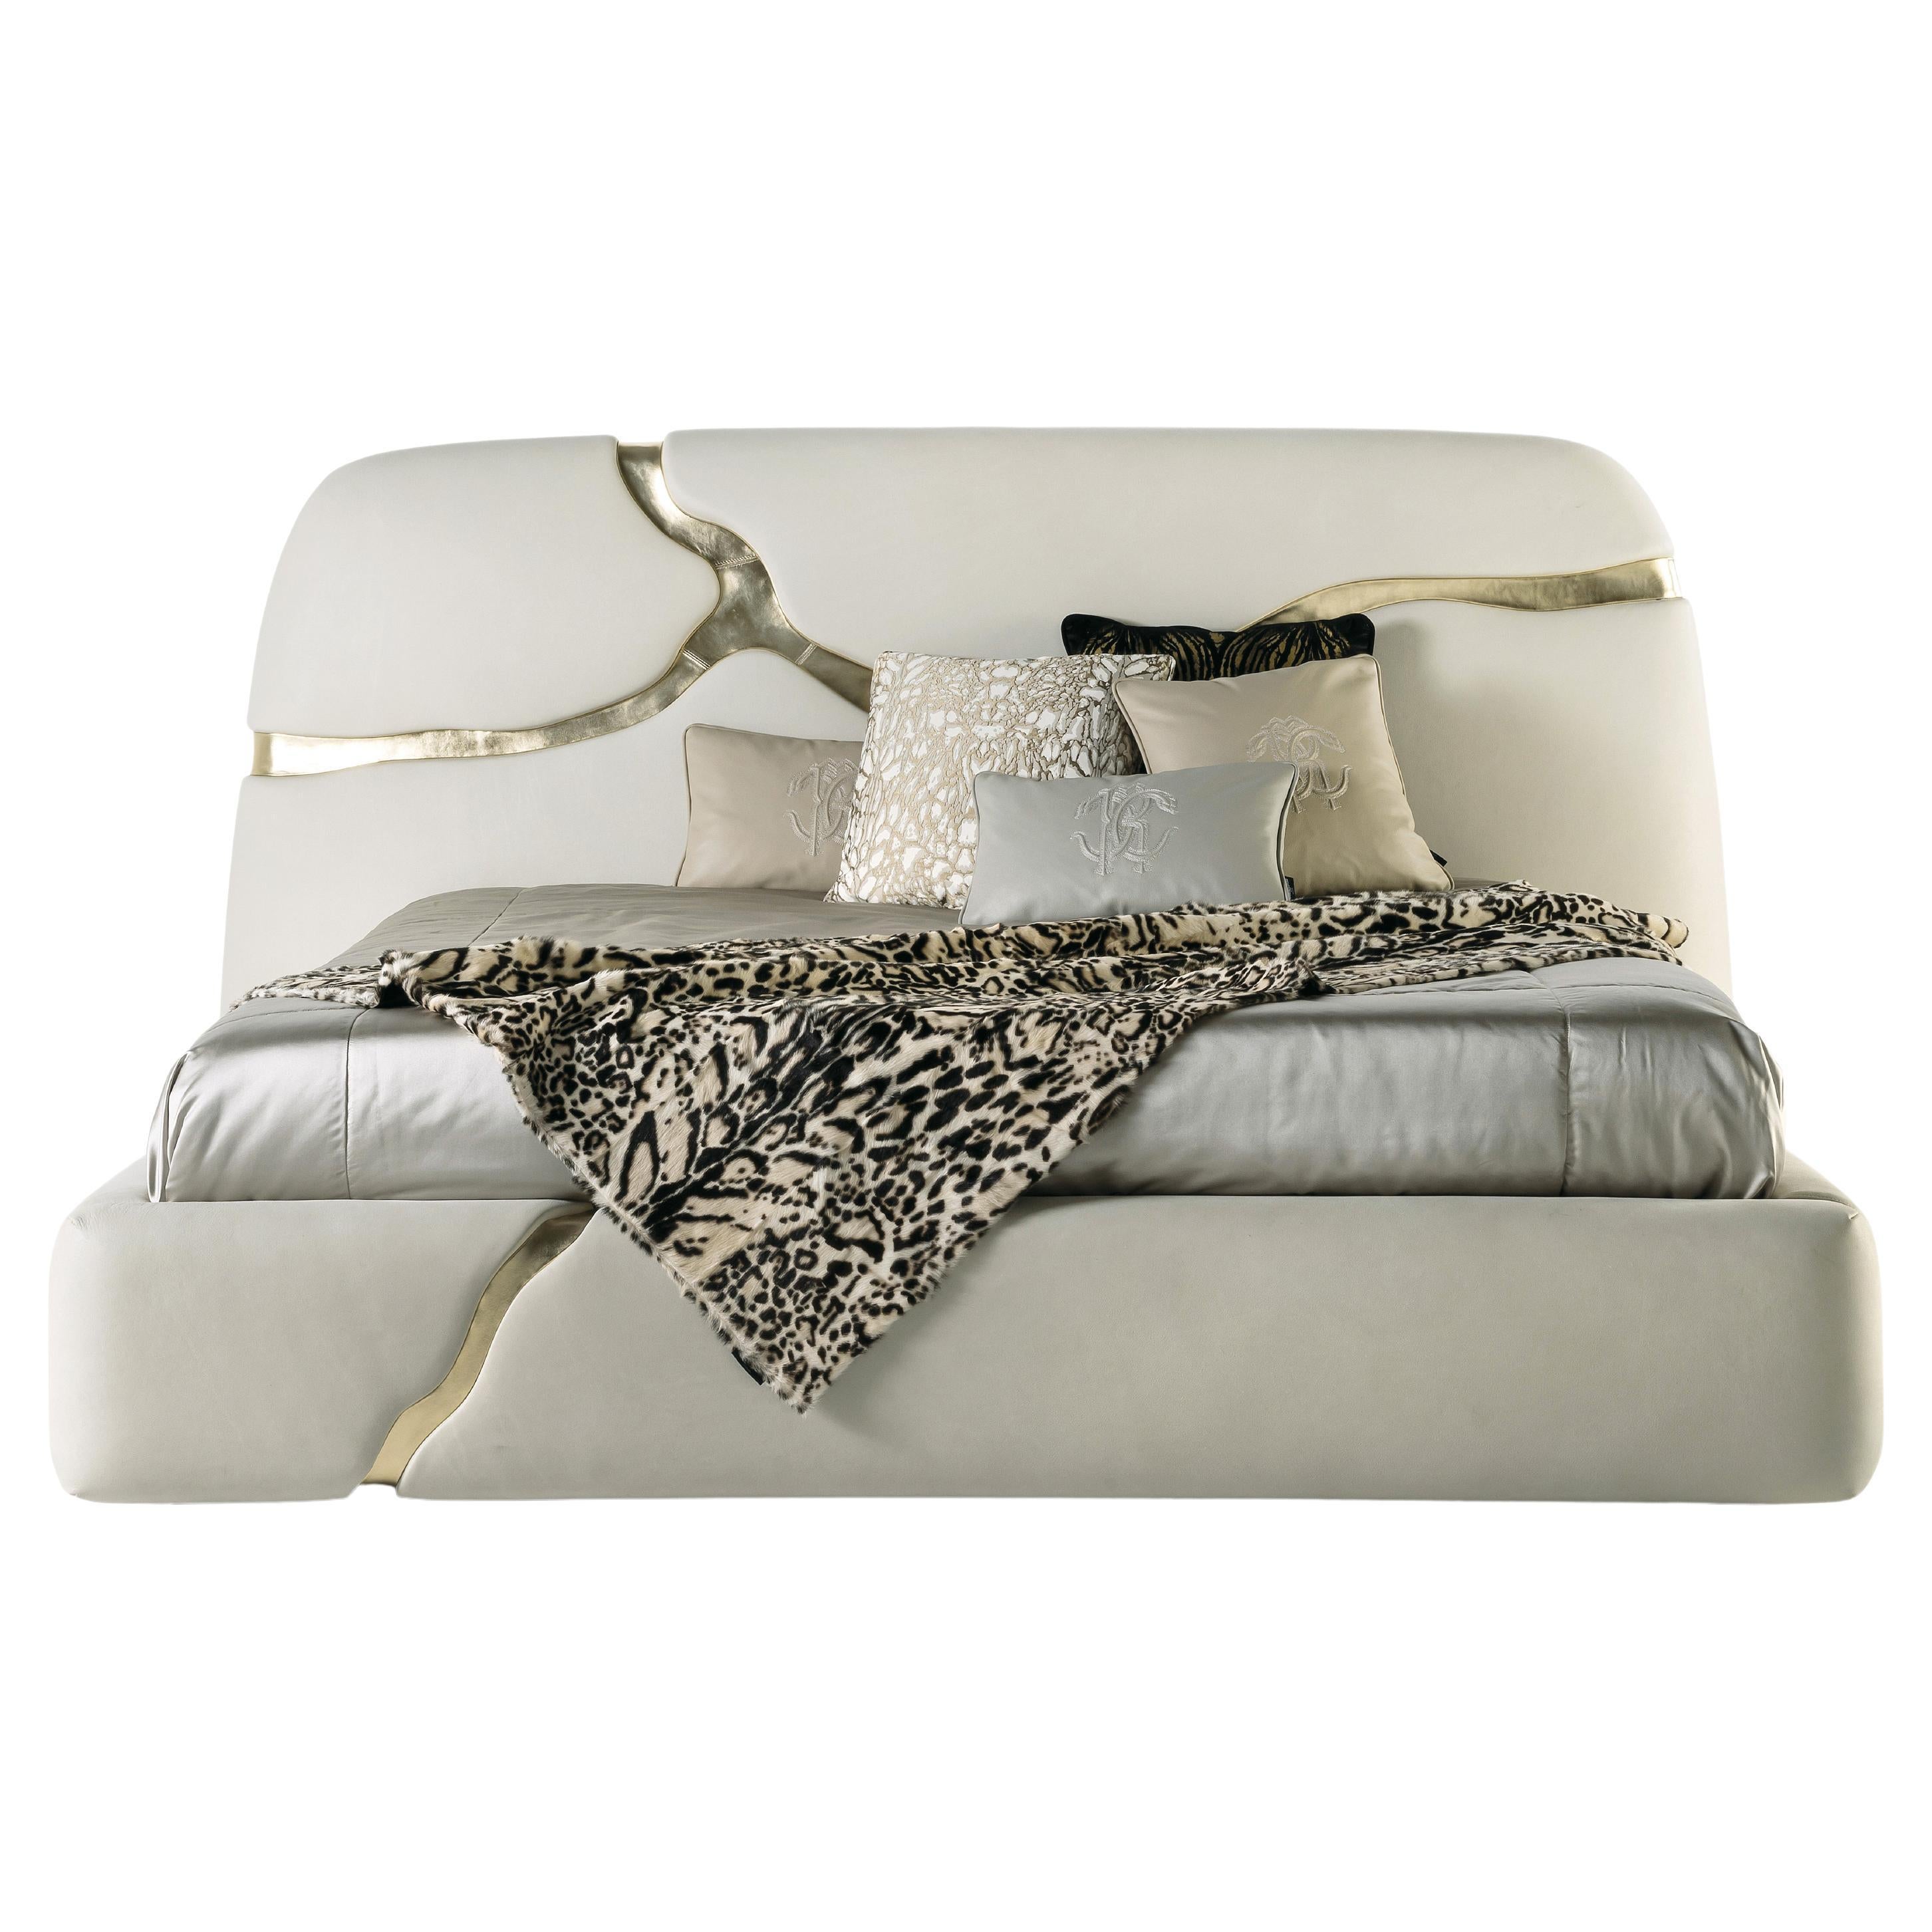 Elgon-Bett aus Leder des 21. Jahrhunderts von Roberto Cavalli Home Interiors